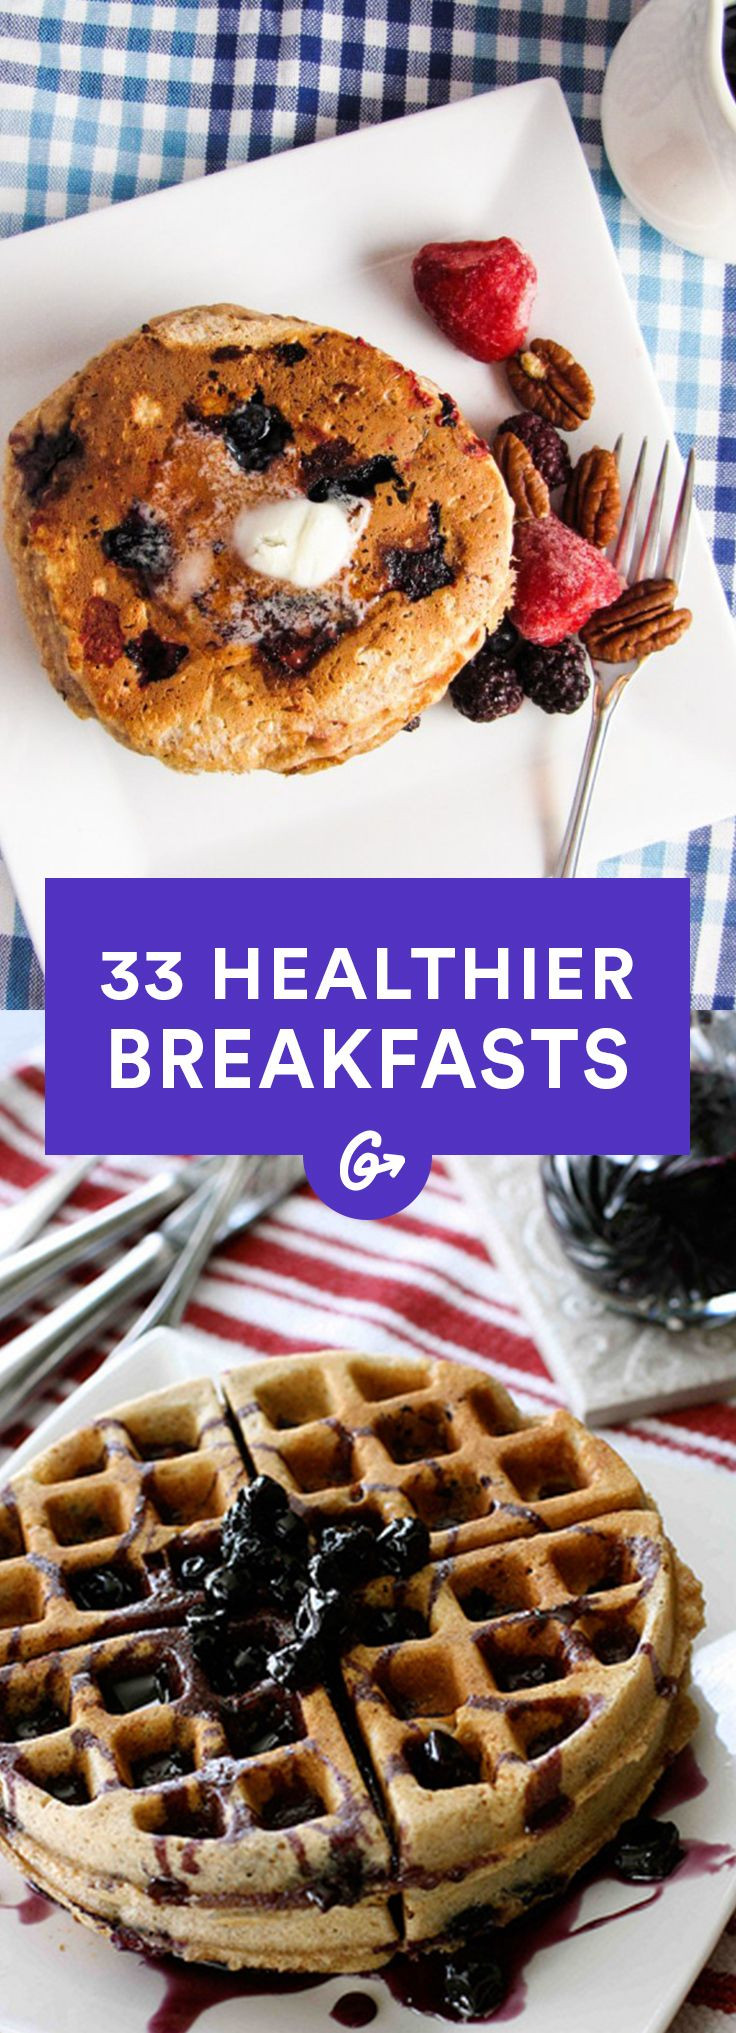 Healthy Breakfast Alternatives
 33 Healthier Breakfast Alternatives